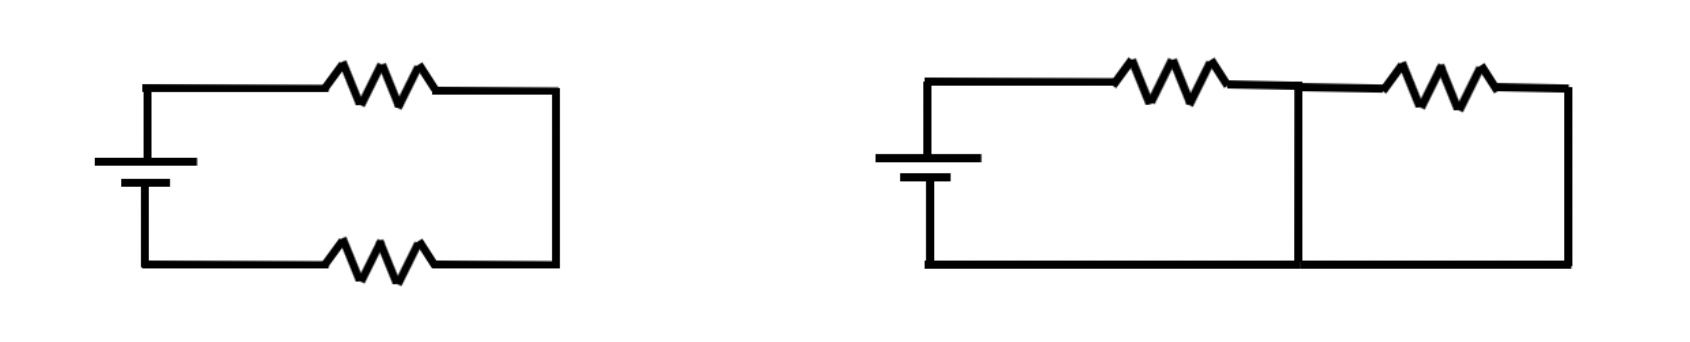 图1.系统A（左）和系统B（右）设置。